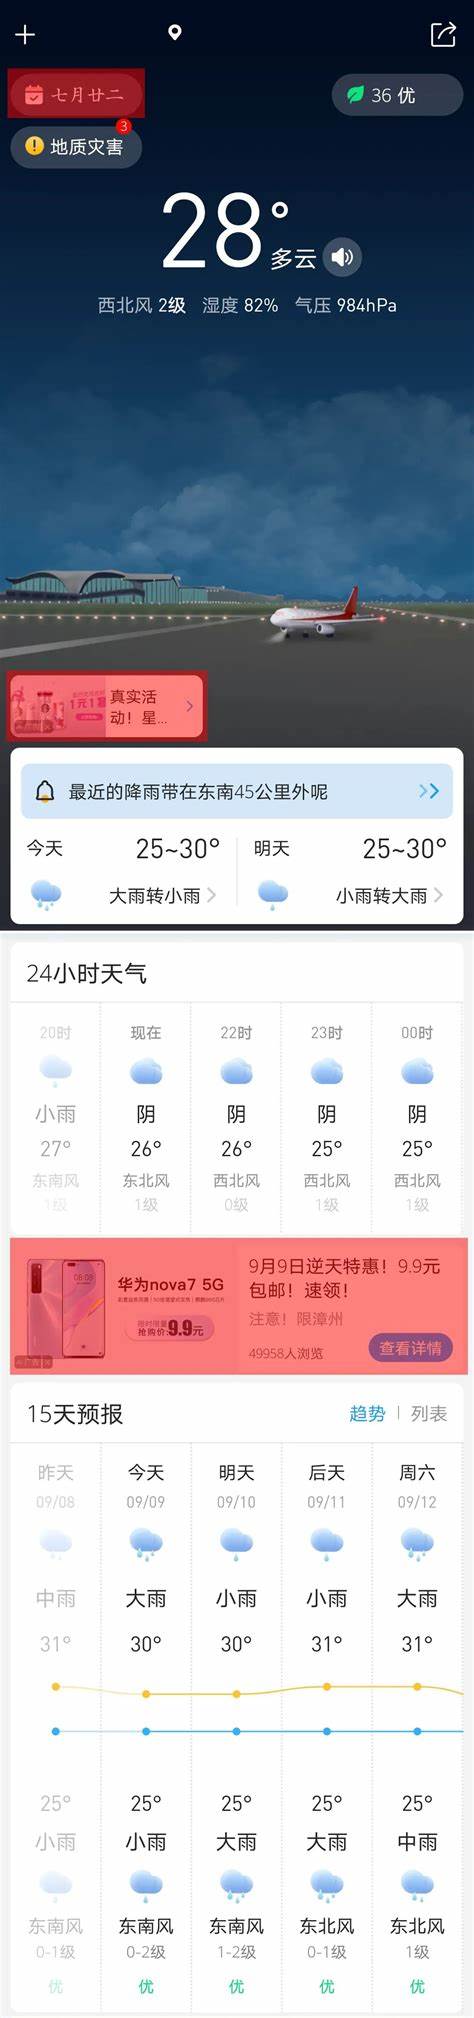 深圳天气40天预报查询表